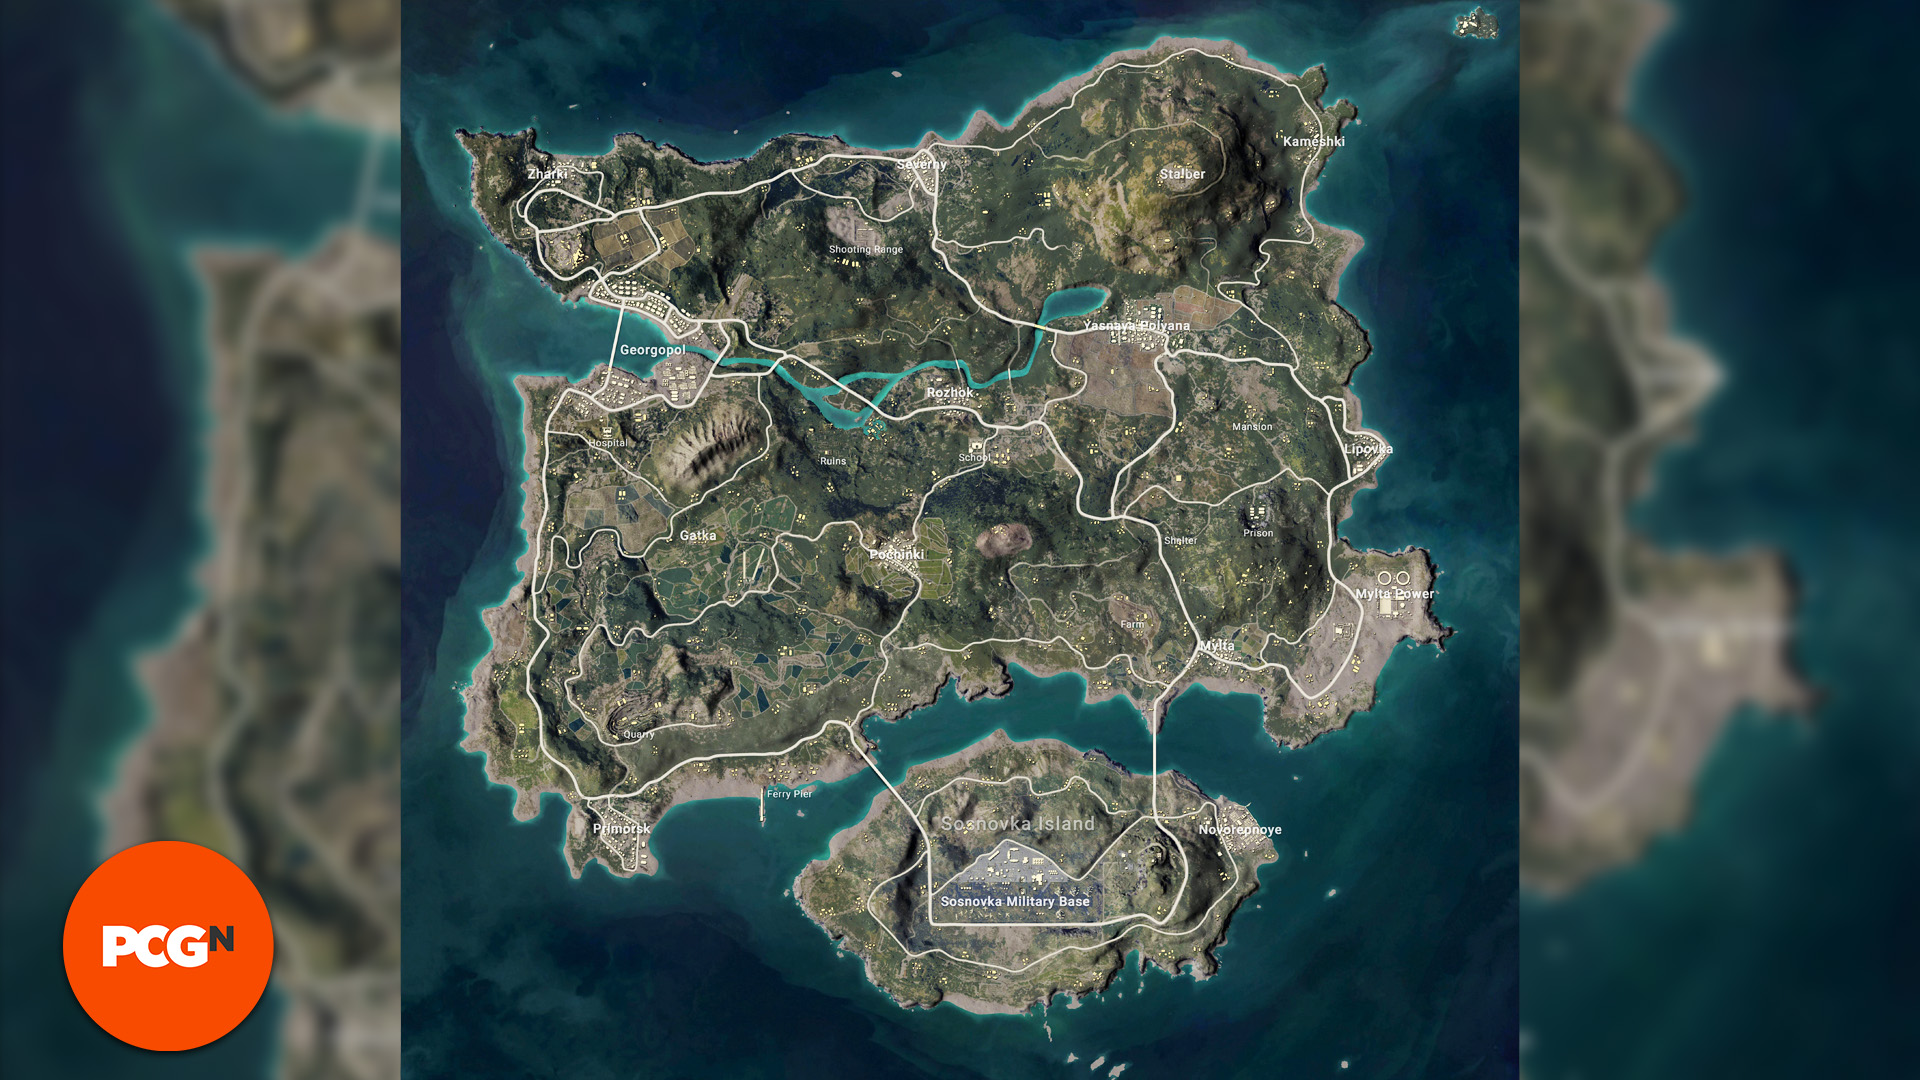 Playerunknowns Battlegrounds PUBG Map: a map view of Erangel